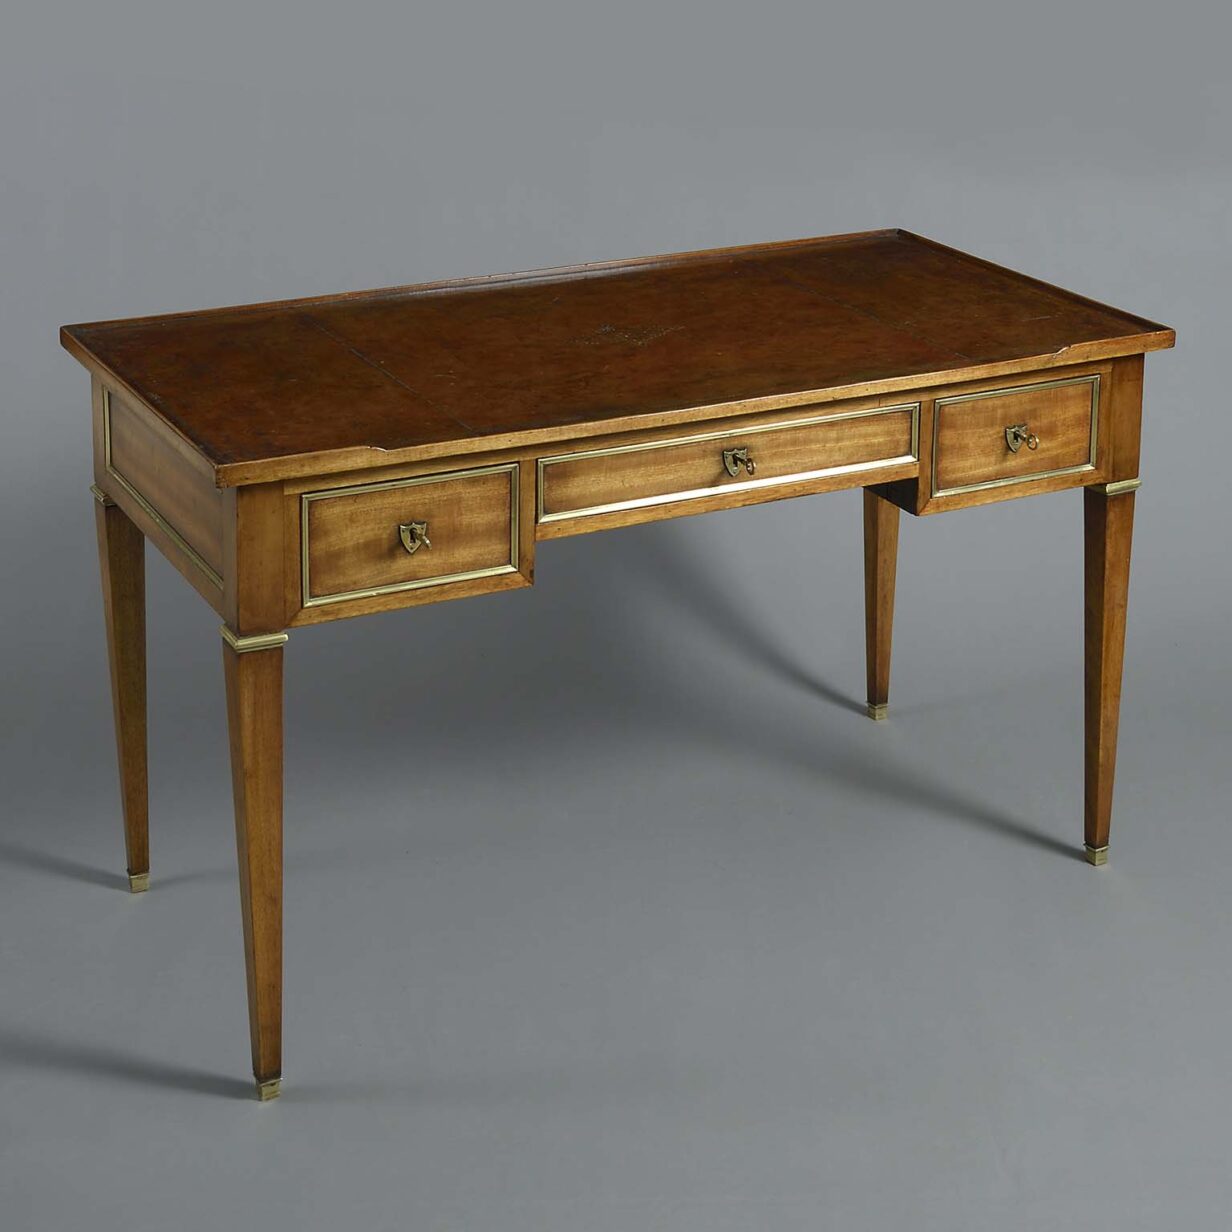 18th century louis xvi period mahogany bureau plat